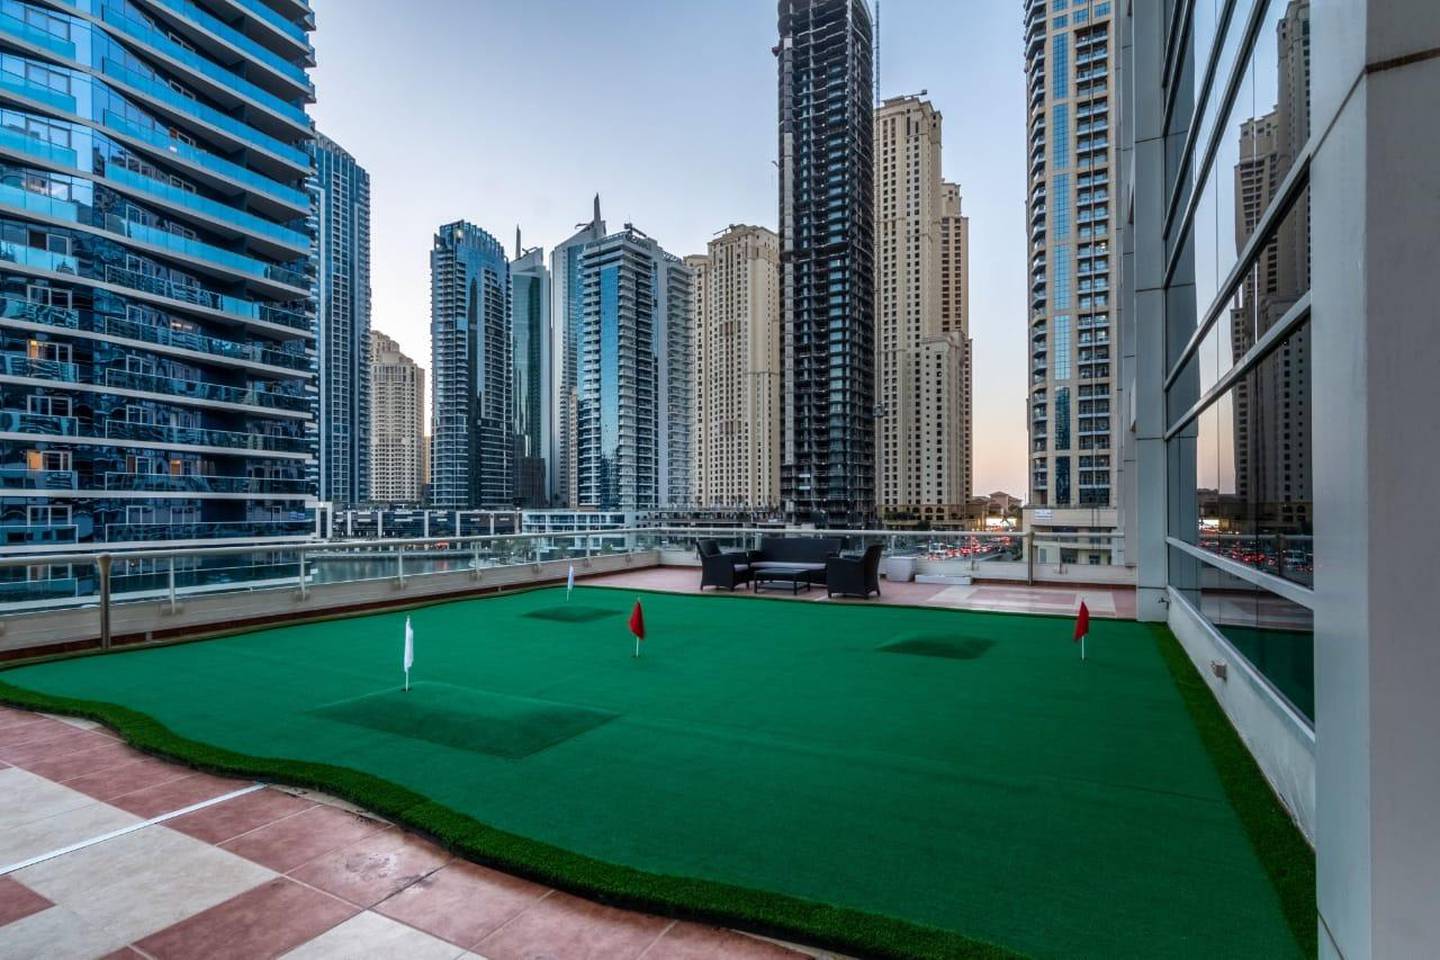 Play a game of mini-golf on the terrace. Courtesy Allsopp & Allsopp